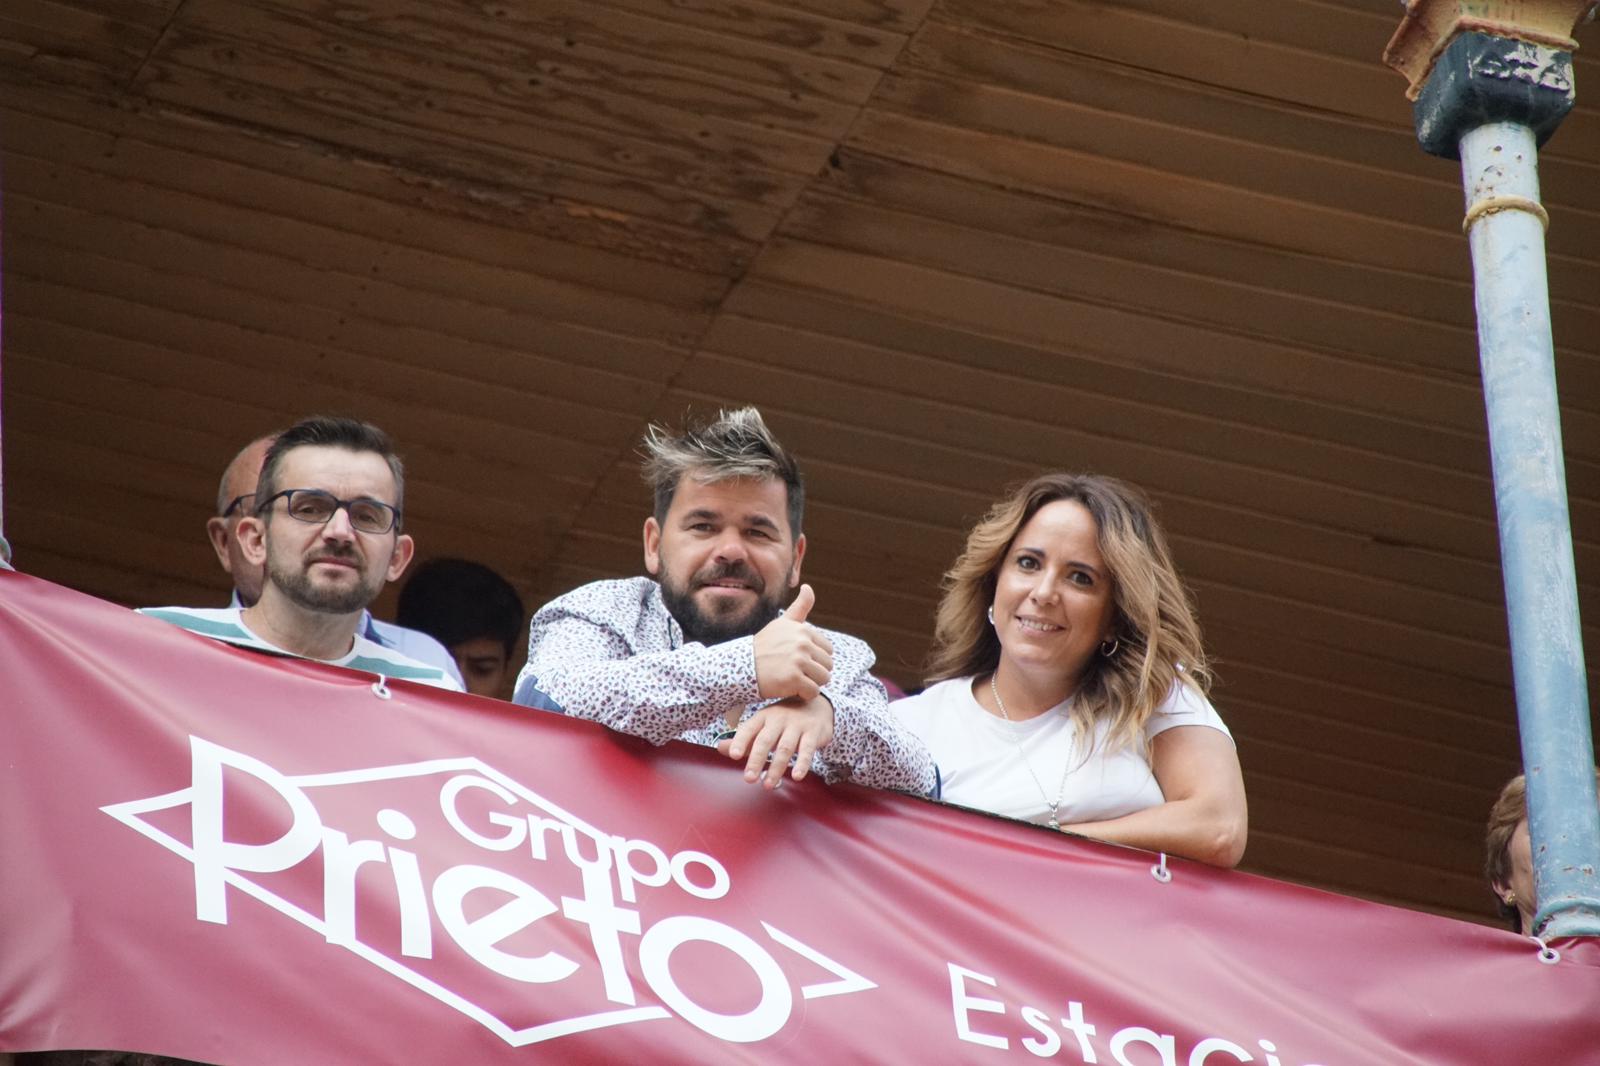 Resumen fotográfico del ambiente en los tendidos de La Glorieta durante la novillada de Lorenzo Espioja. Fotos Juanes